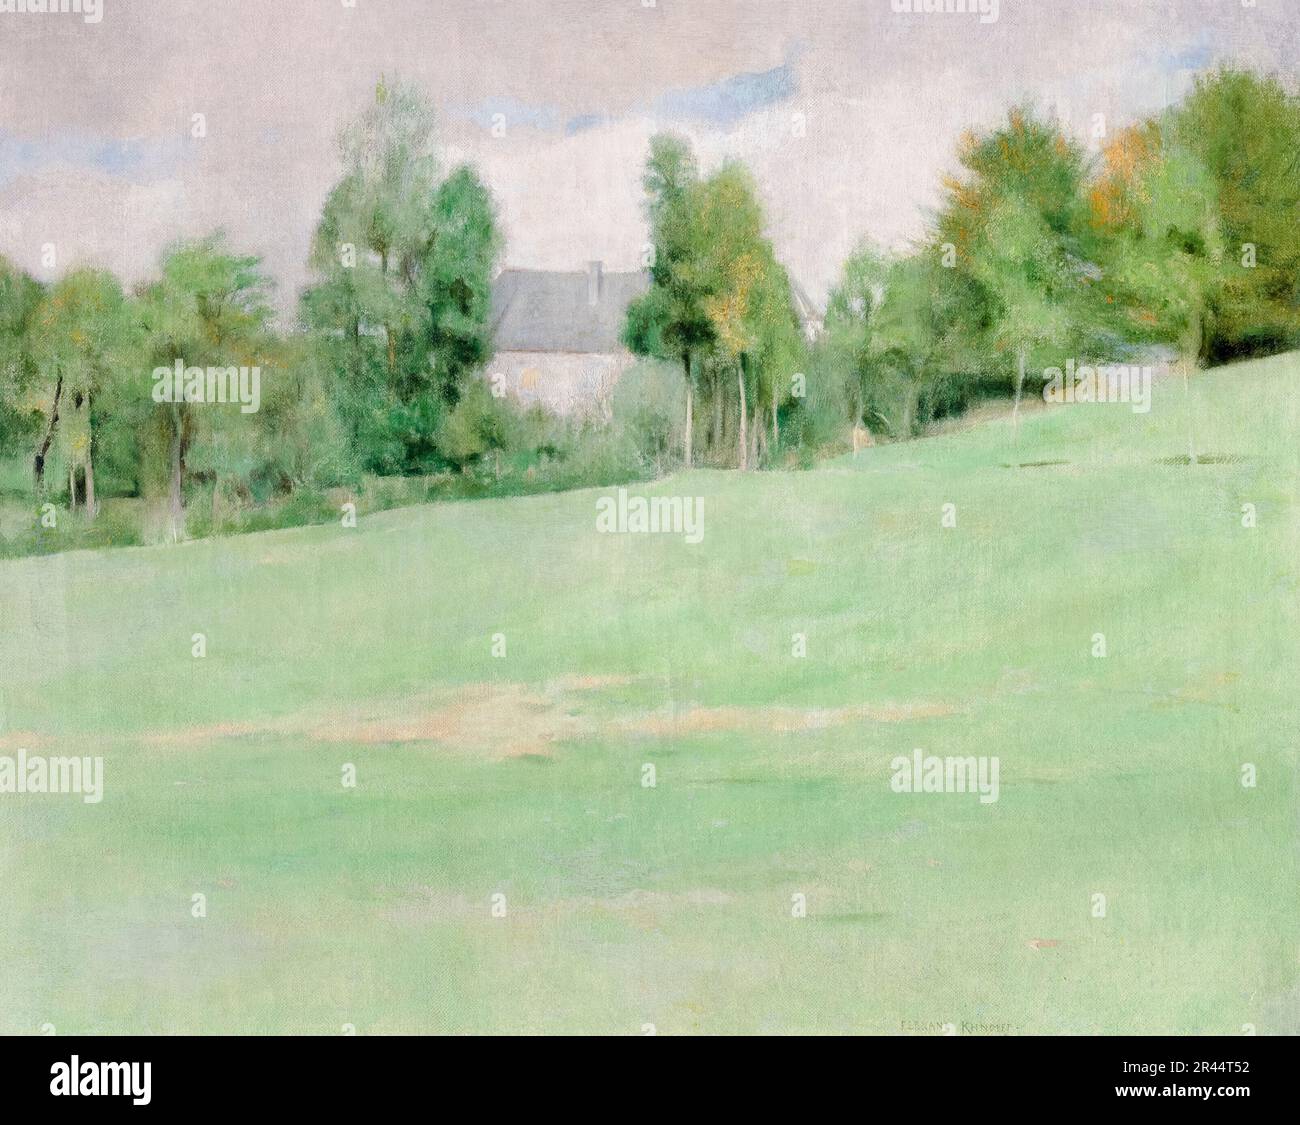 Fernand Khnopff, La venue de l’aube à Fosset (The coming of dawn in Fosset), landscape painting 1882 Stock Photo